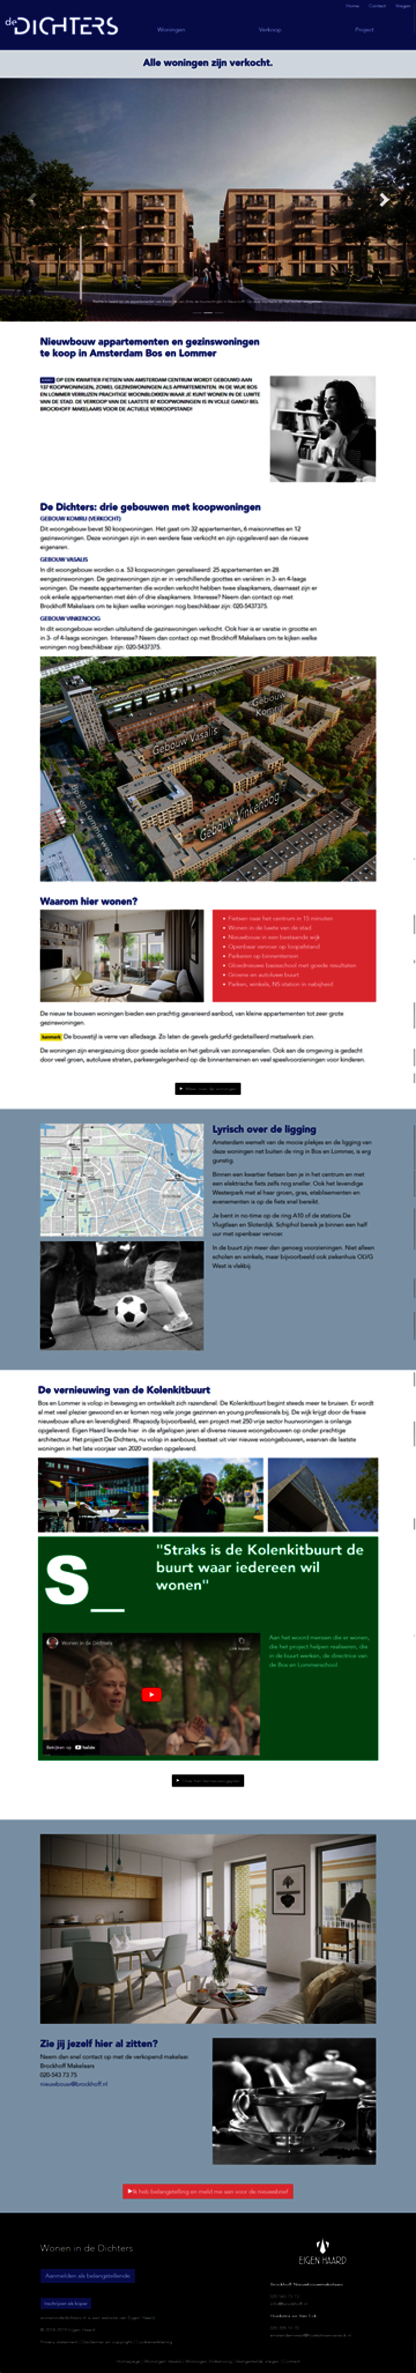 TYPO3-CMS-Website-Homepage-EigenHaard-01